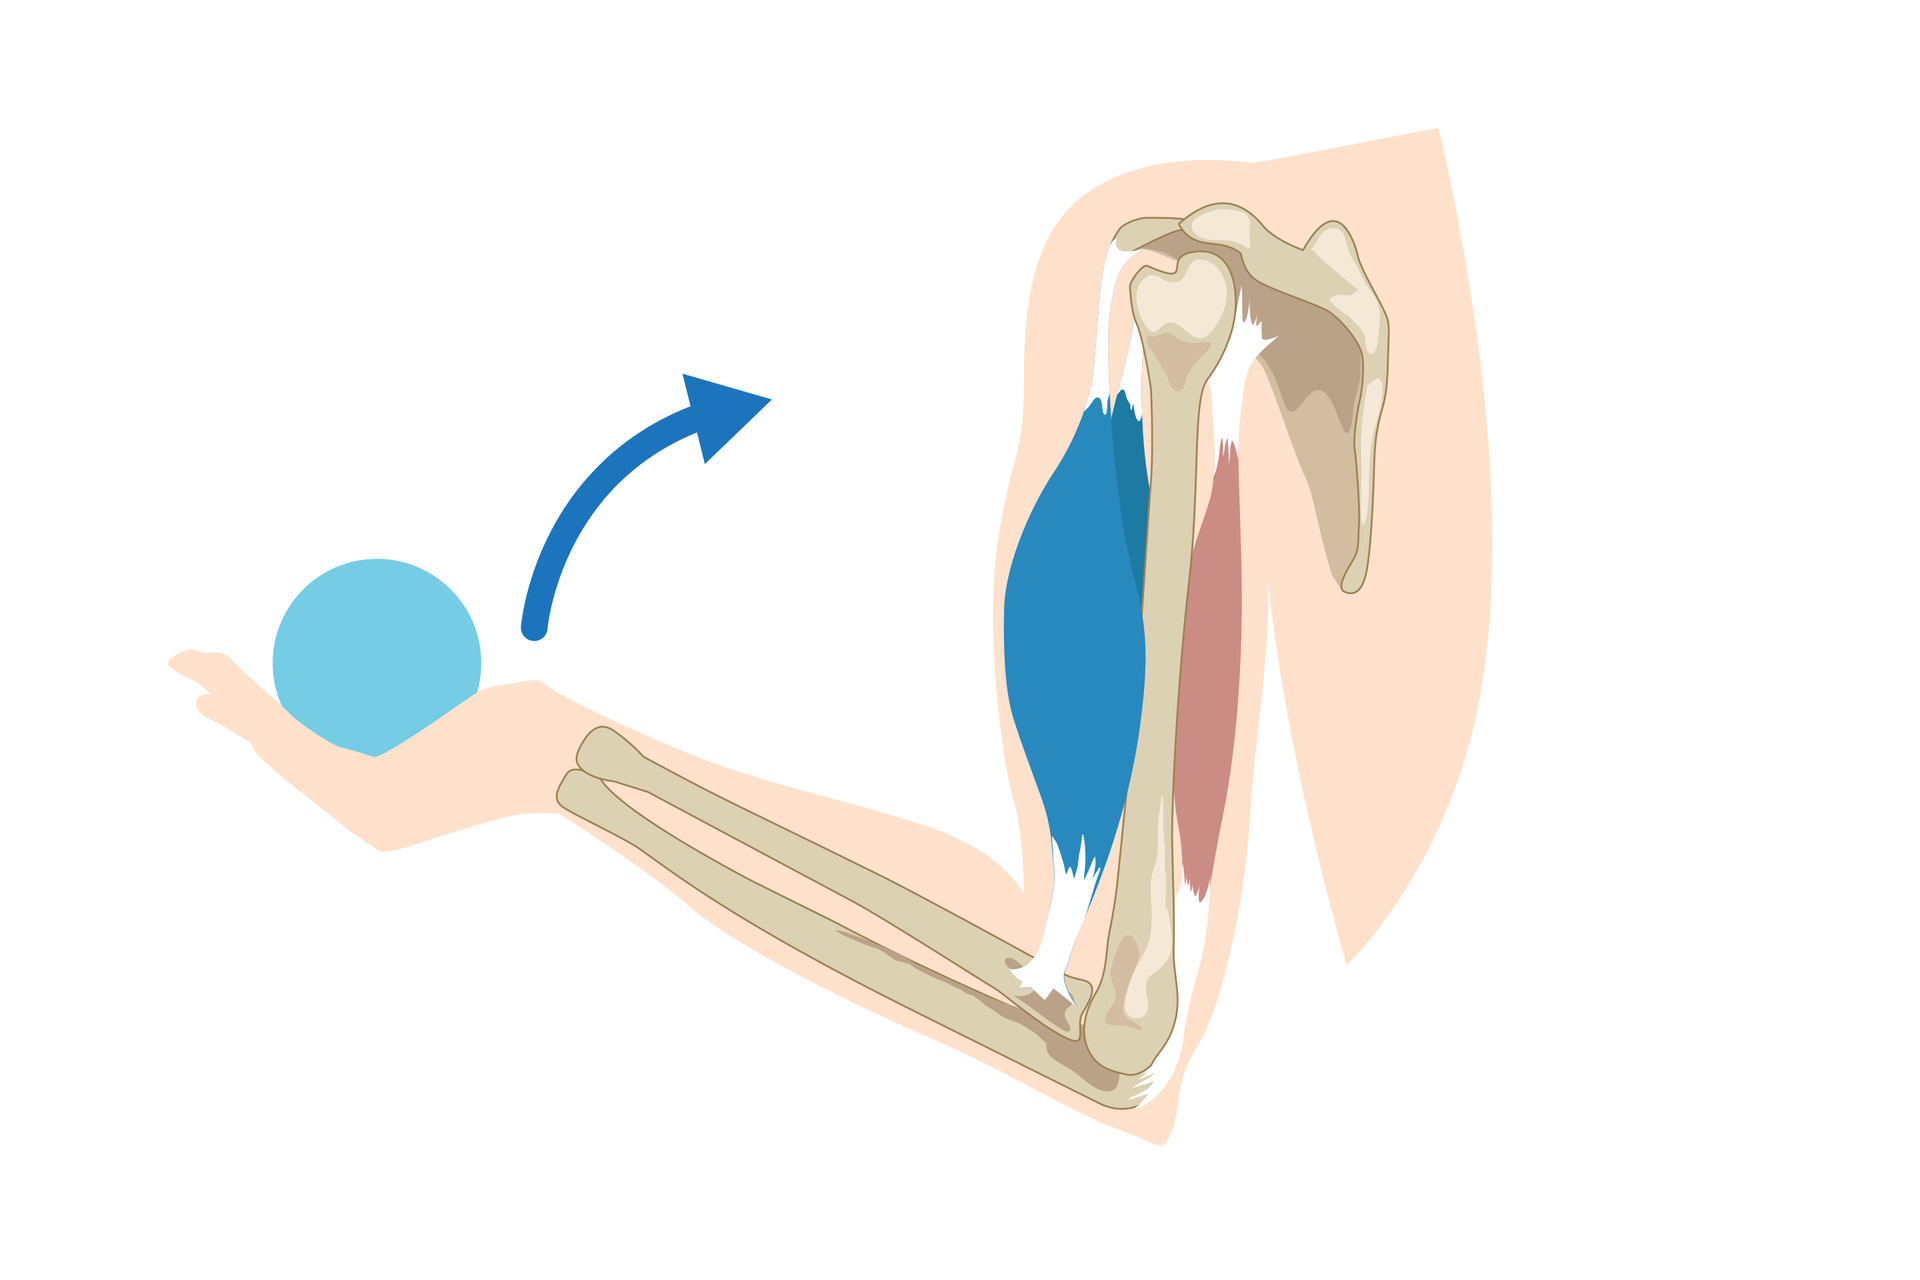 Schemat przedstawia kończynę górną człowieka: Widoczne są łopatka, kość ramienna i kości przedramienia. Przy kości ramiennej widać dwa mięśnie. Przedni jest niebieski i gruby, tylny czerwony i cienki. W dłoni widać niebieską piłkę. Strzałka nad dłonią wskazuje zginający ruch ręki, polegający na przyciągnięciu dłoni i kości przedramienia do kości ramiennej.